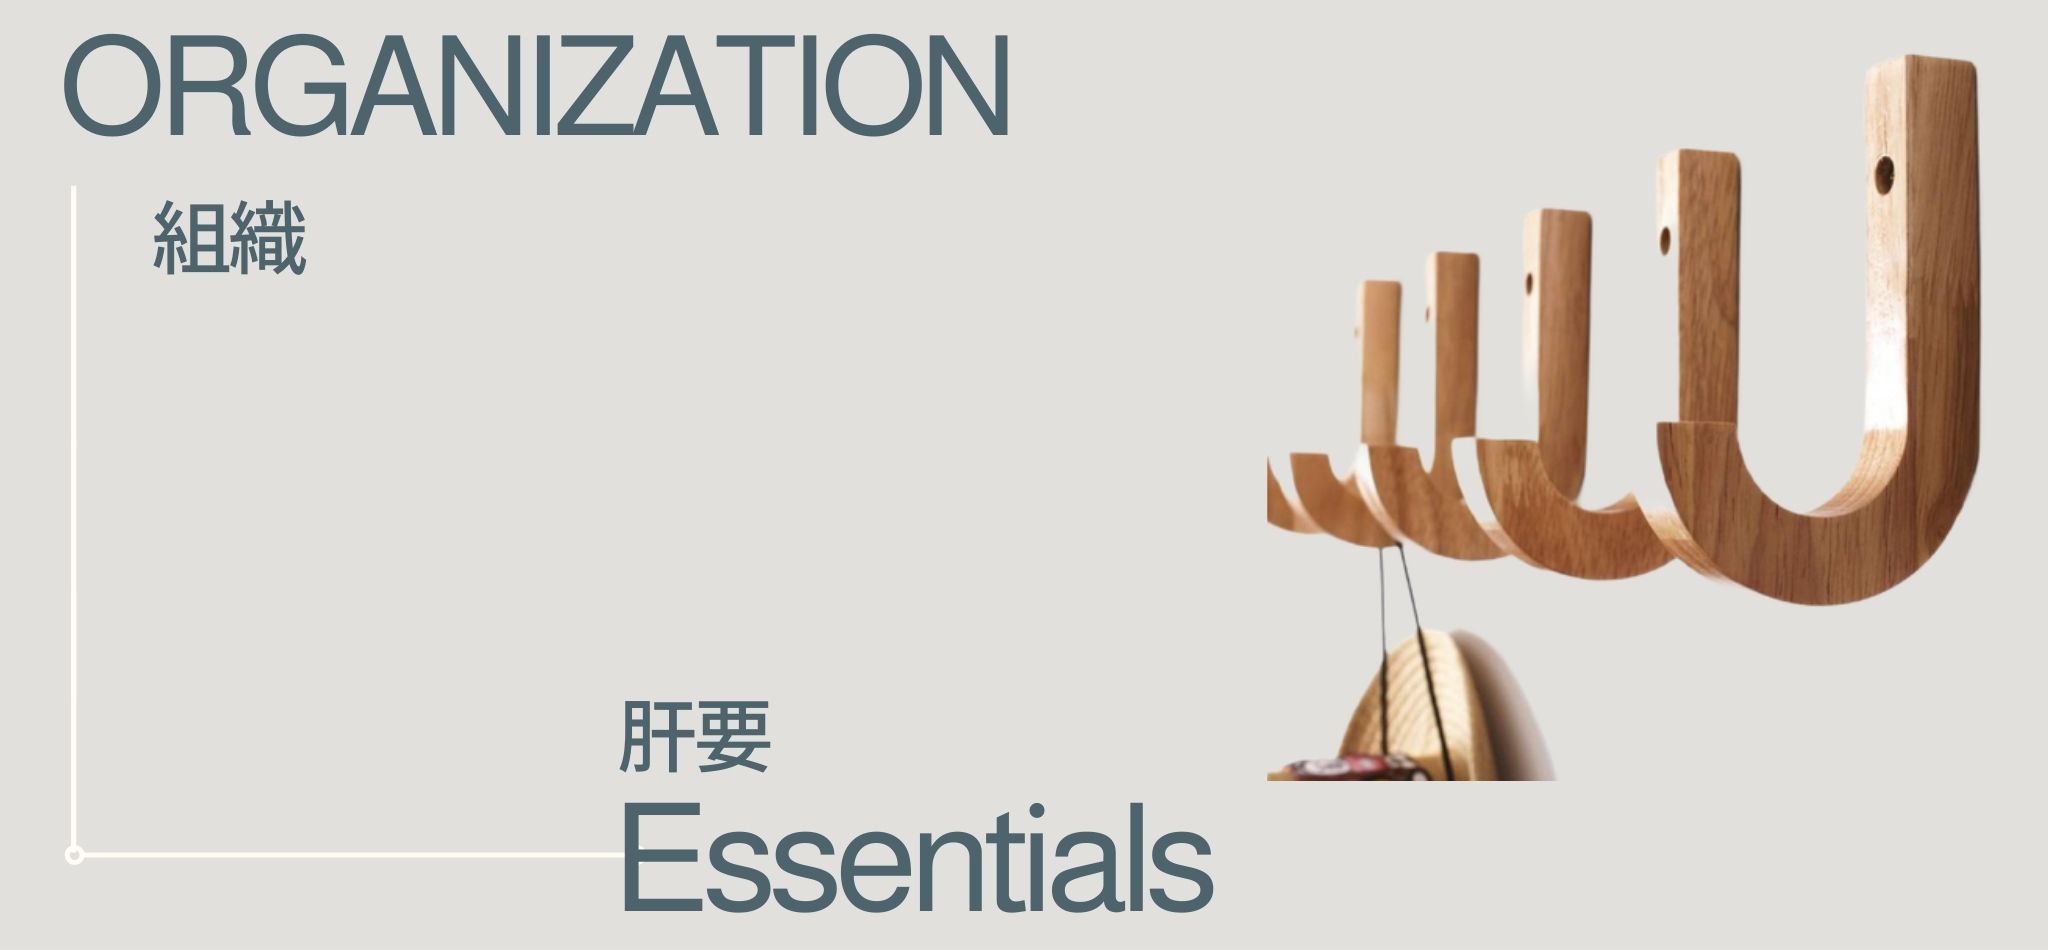 Organization Essentials | miteigi 